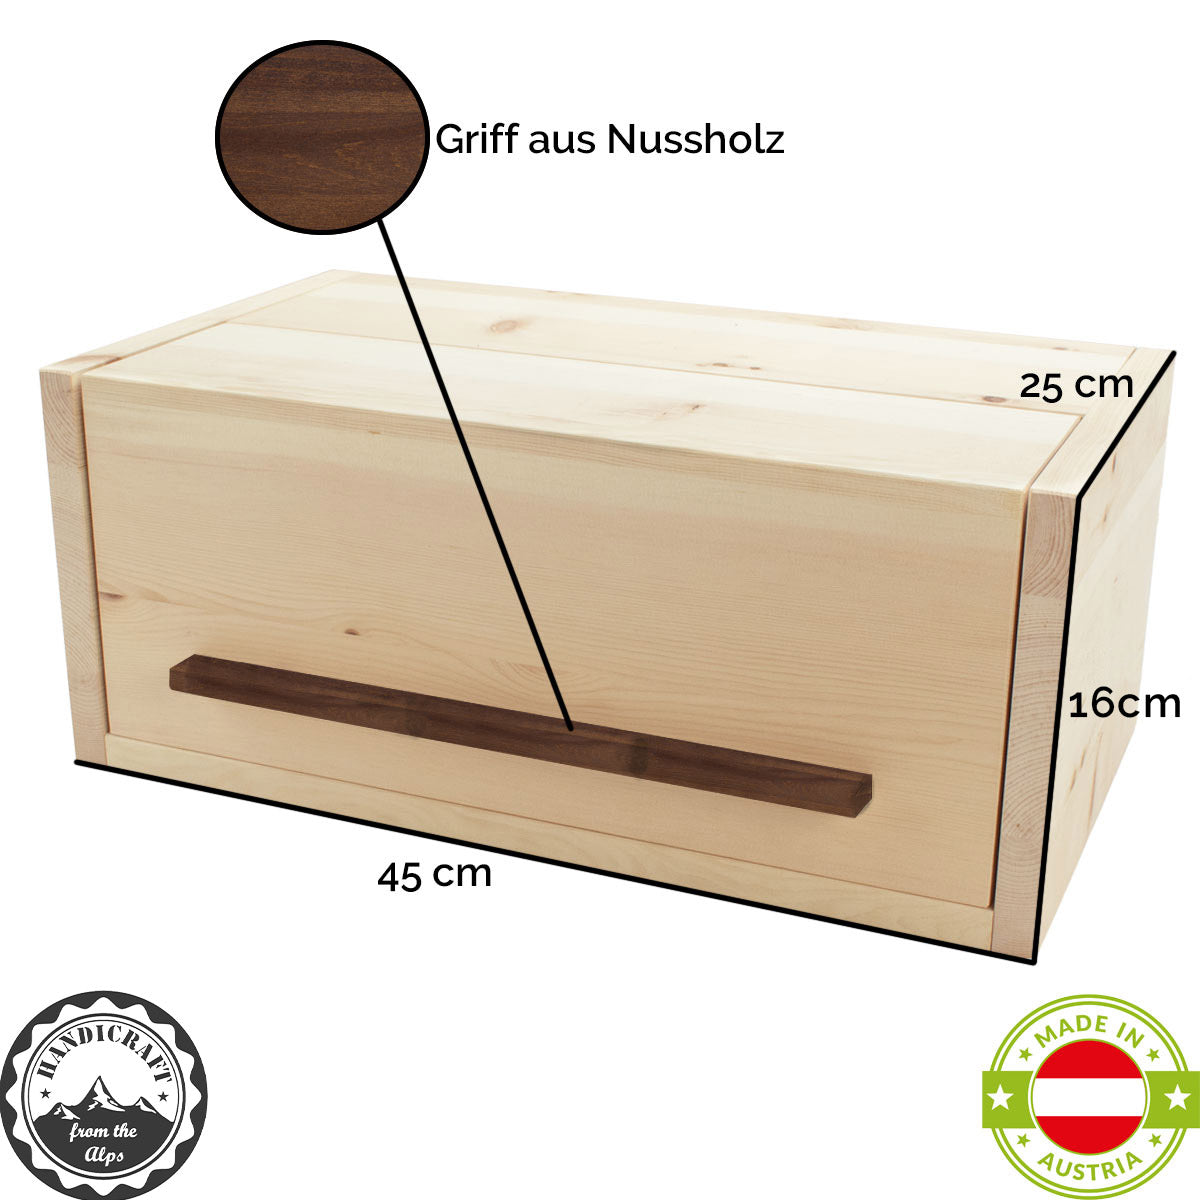 Brotkasten aus Zirbenholz | mit Nussgriff und Klappdeckel | mit gratis Einlegegitter | 45 x 25 x 16 cm | Made in Austria